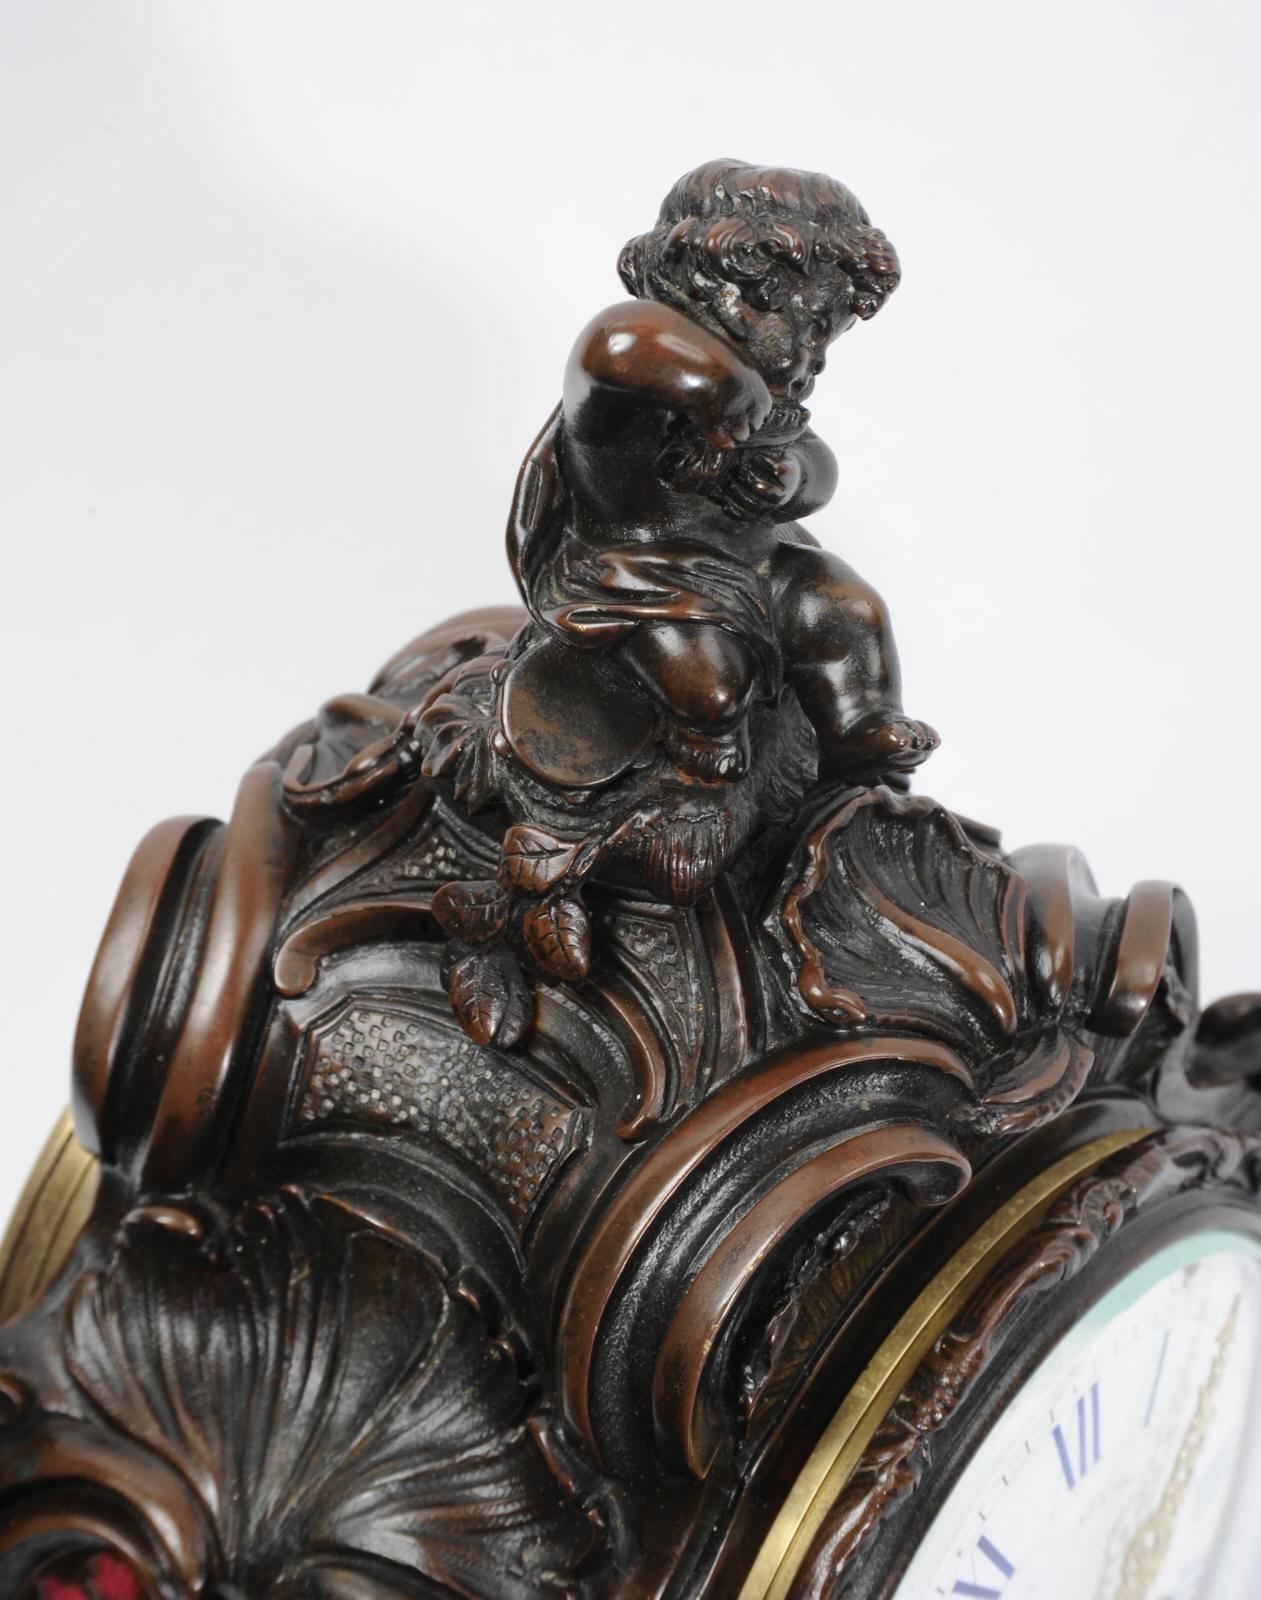 Eine hervorragende antike französische Rokoko-Uhr des berühmten Herstellers Japy Freres, um 1890. Wunderschön detailliertes Bronzegehäuse mit C-Rollen, Akanthus- und Muschelmotiven. Oben sitzt ein charmanter Putto und spielt Pfeife. Fretted Sound